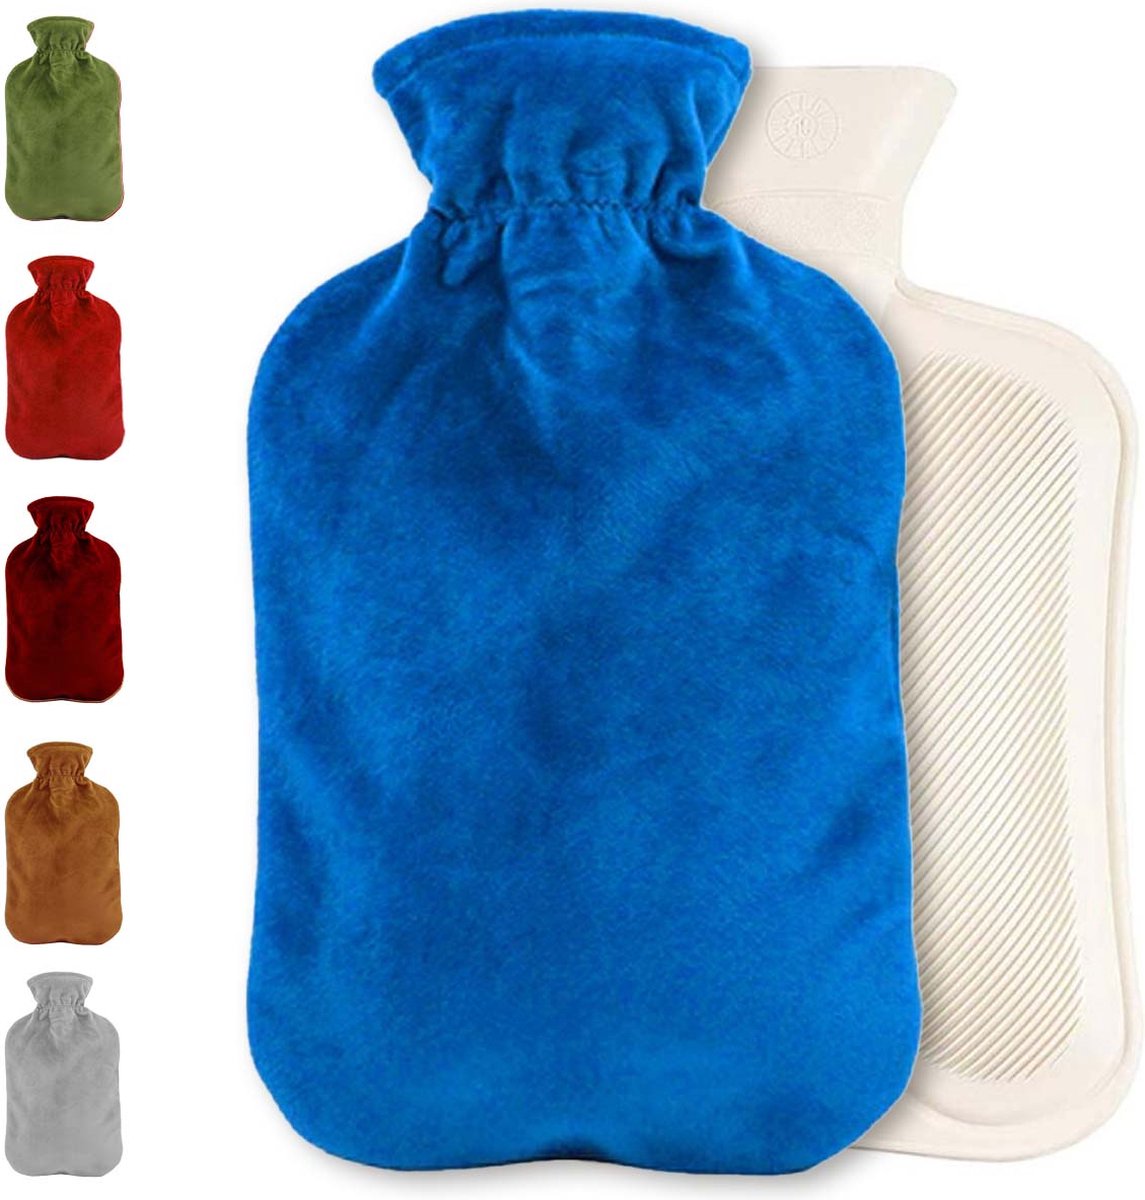 Warmwaterkruik met fleece hoes | Warmtekruik | Kruik | Warmwaterkruik | Rubber | 2 liter | Blauw | Inclusief fleece hoes | Able & Borret